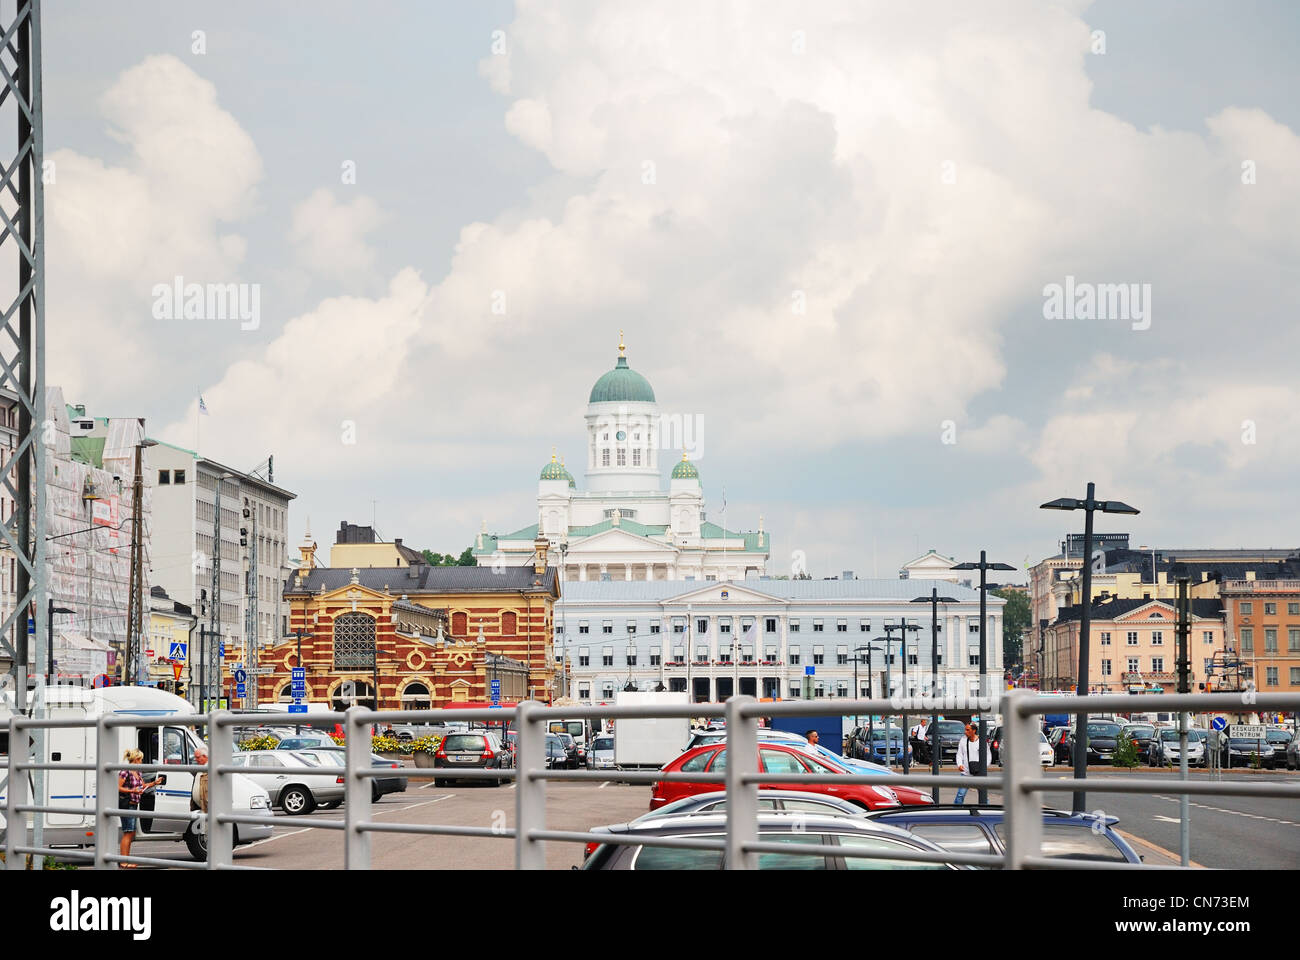 The Market square in Helsinki Stock Photo